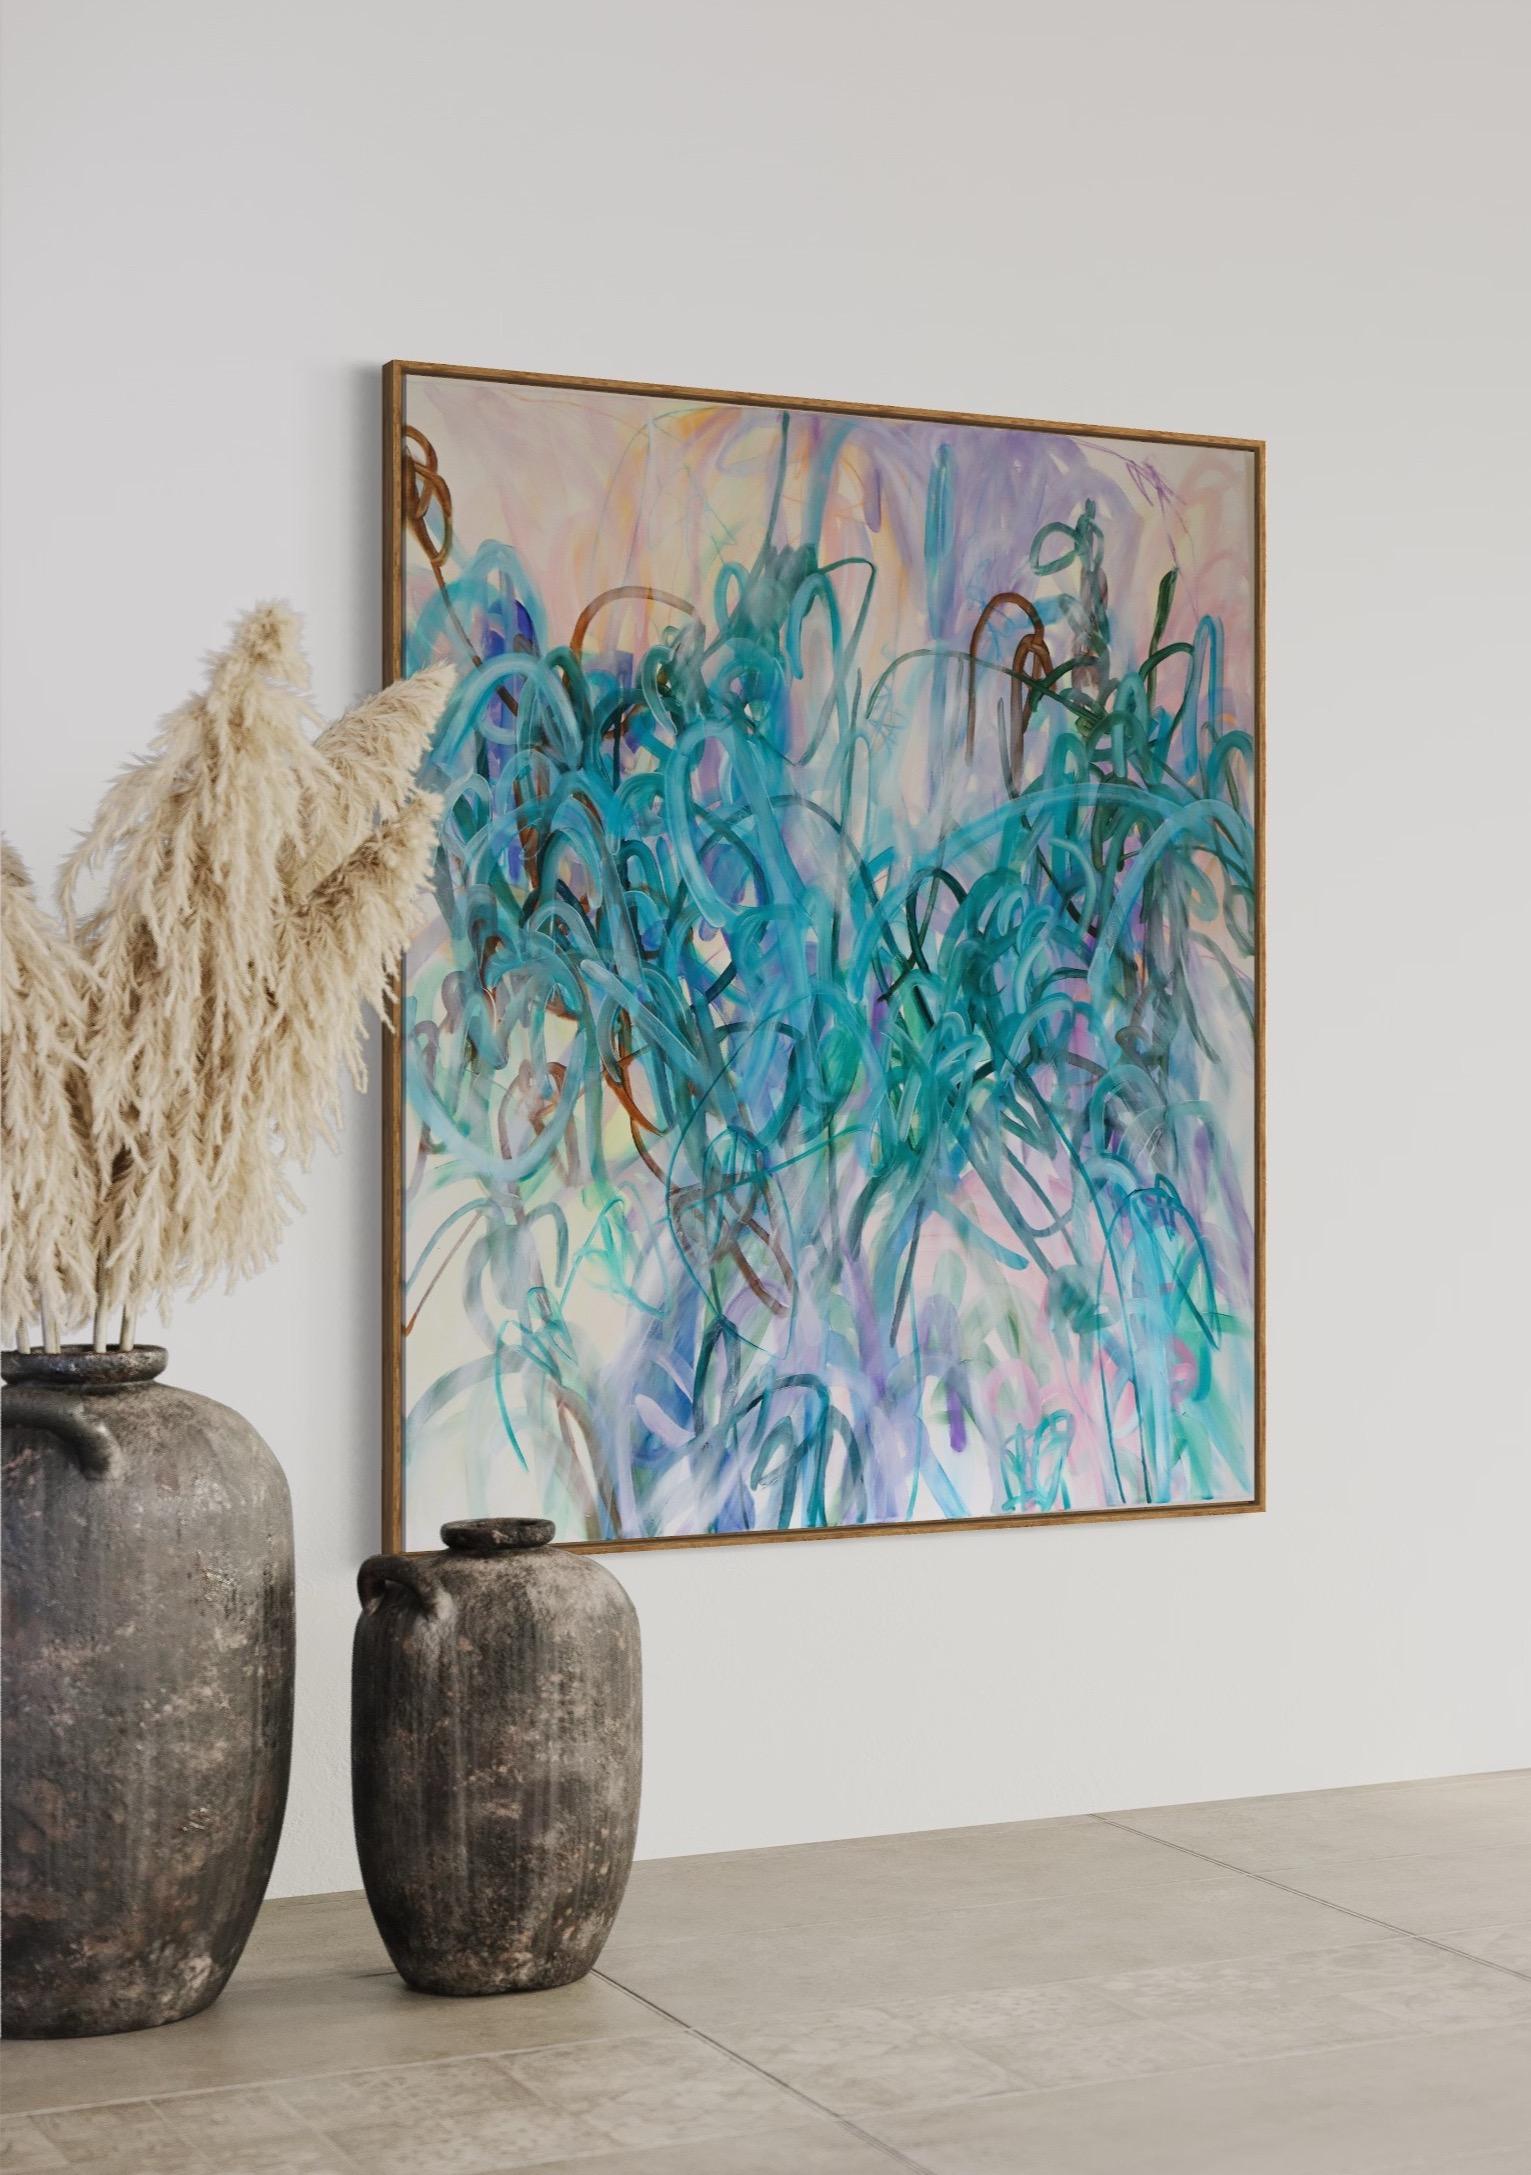 Zeitgenössische abstrakte Malerei mit Öl, Acryl und Ölpastell auf Leinwand der schwedischen Künstlerin Elin Kereby. Ihre lebhaften Öl- und Mischtechnikbilder, die aus geschichteten Linien bestehen, spiegeln wider, wie sie die Welt sieht: Sie besteht